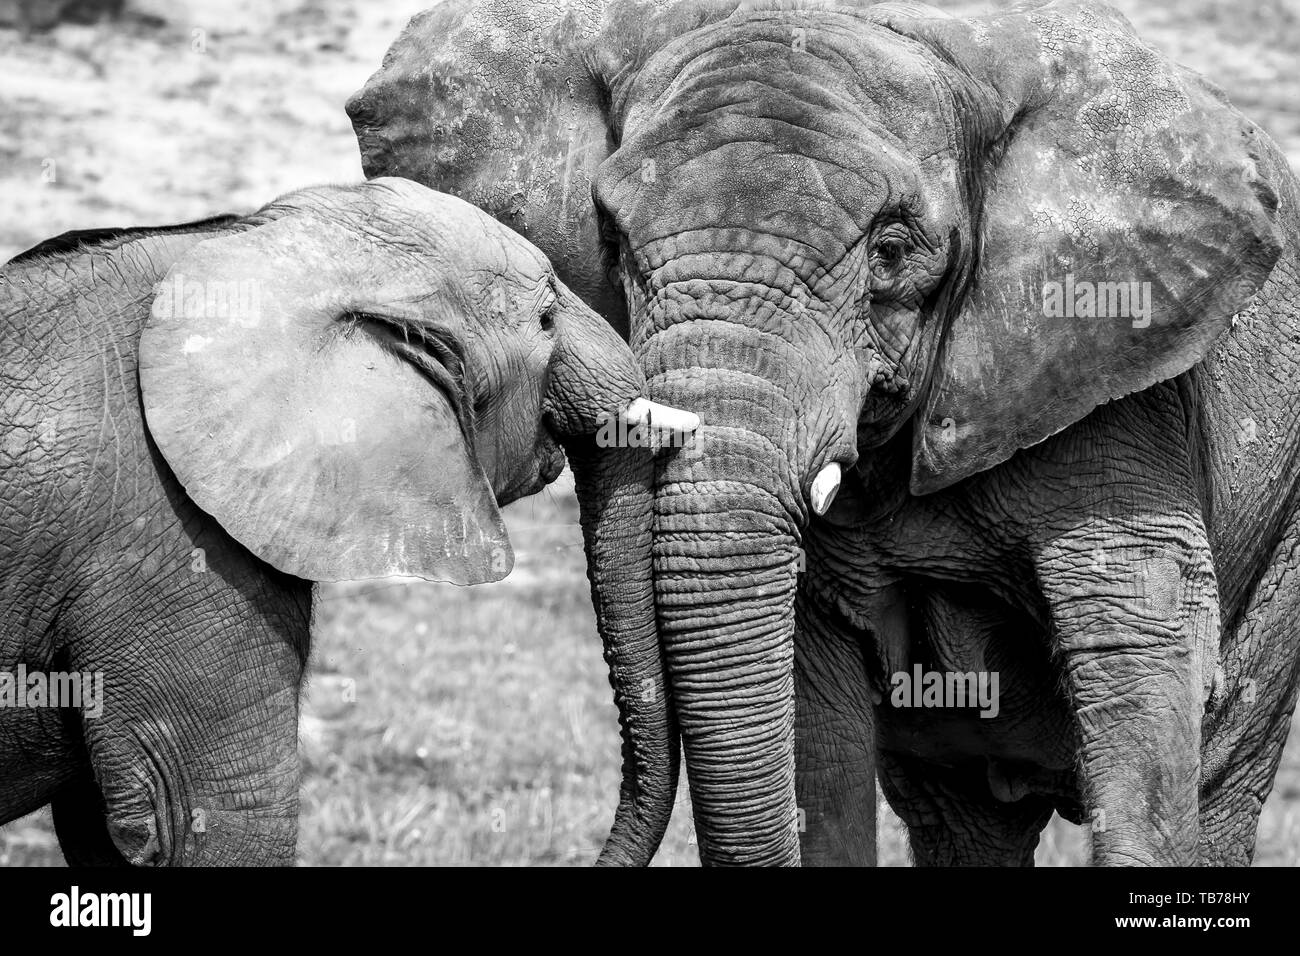 El primer plano en blanco y negro muestra un fuerte afecto vínculo amor entre el elefante africano ternero y madre (Loxodonta africana) juntos en los animales Sun.Wildlife. Foto de stock